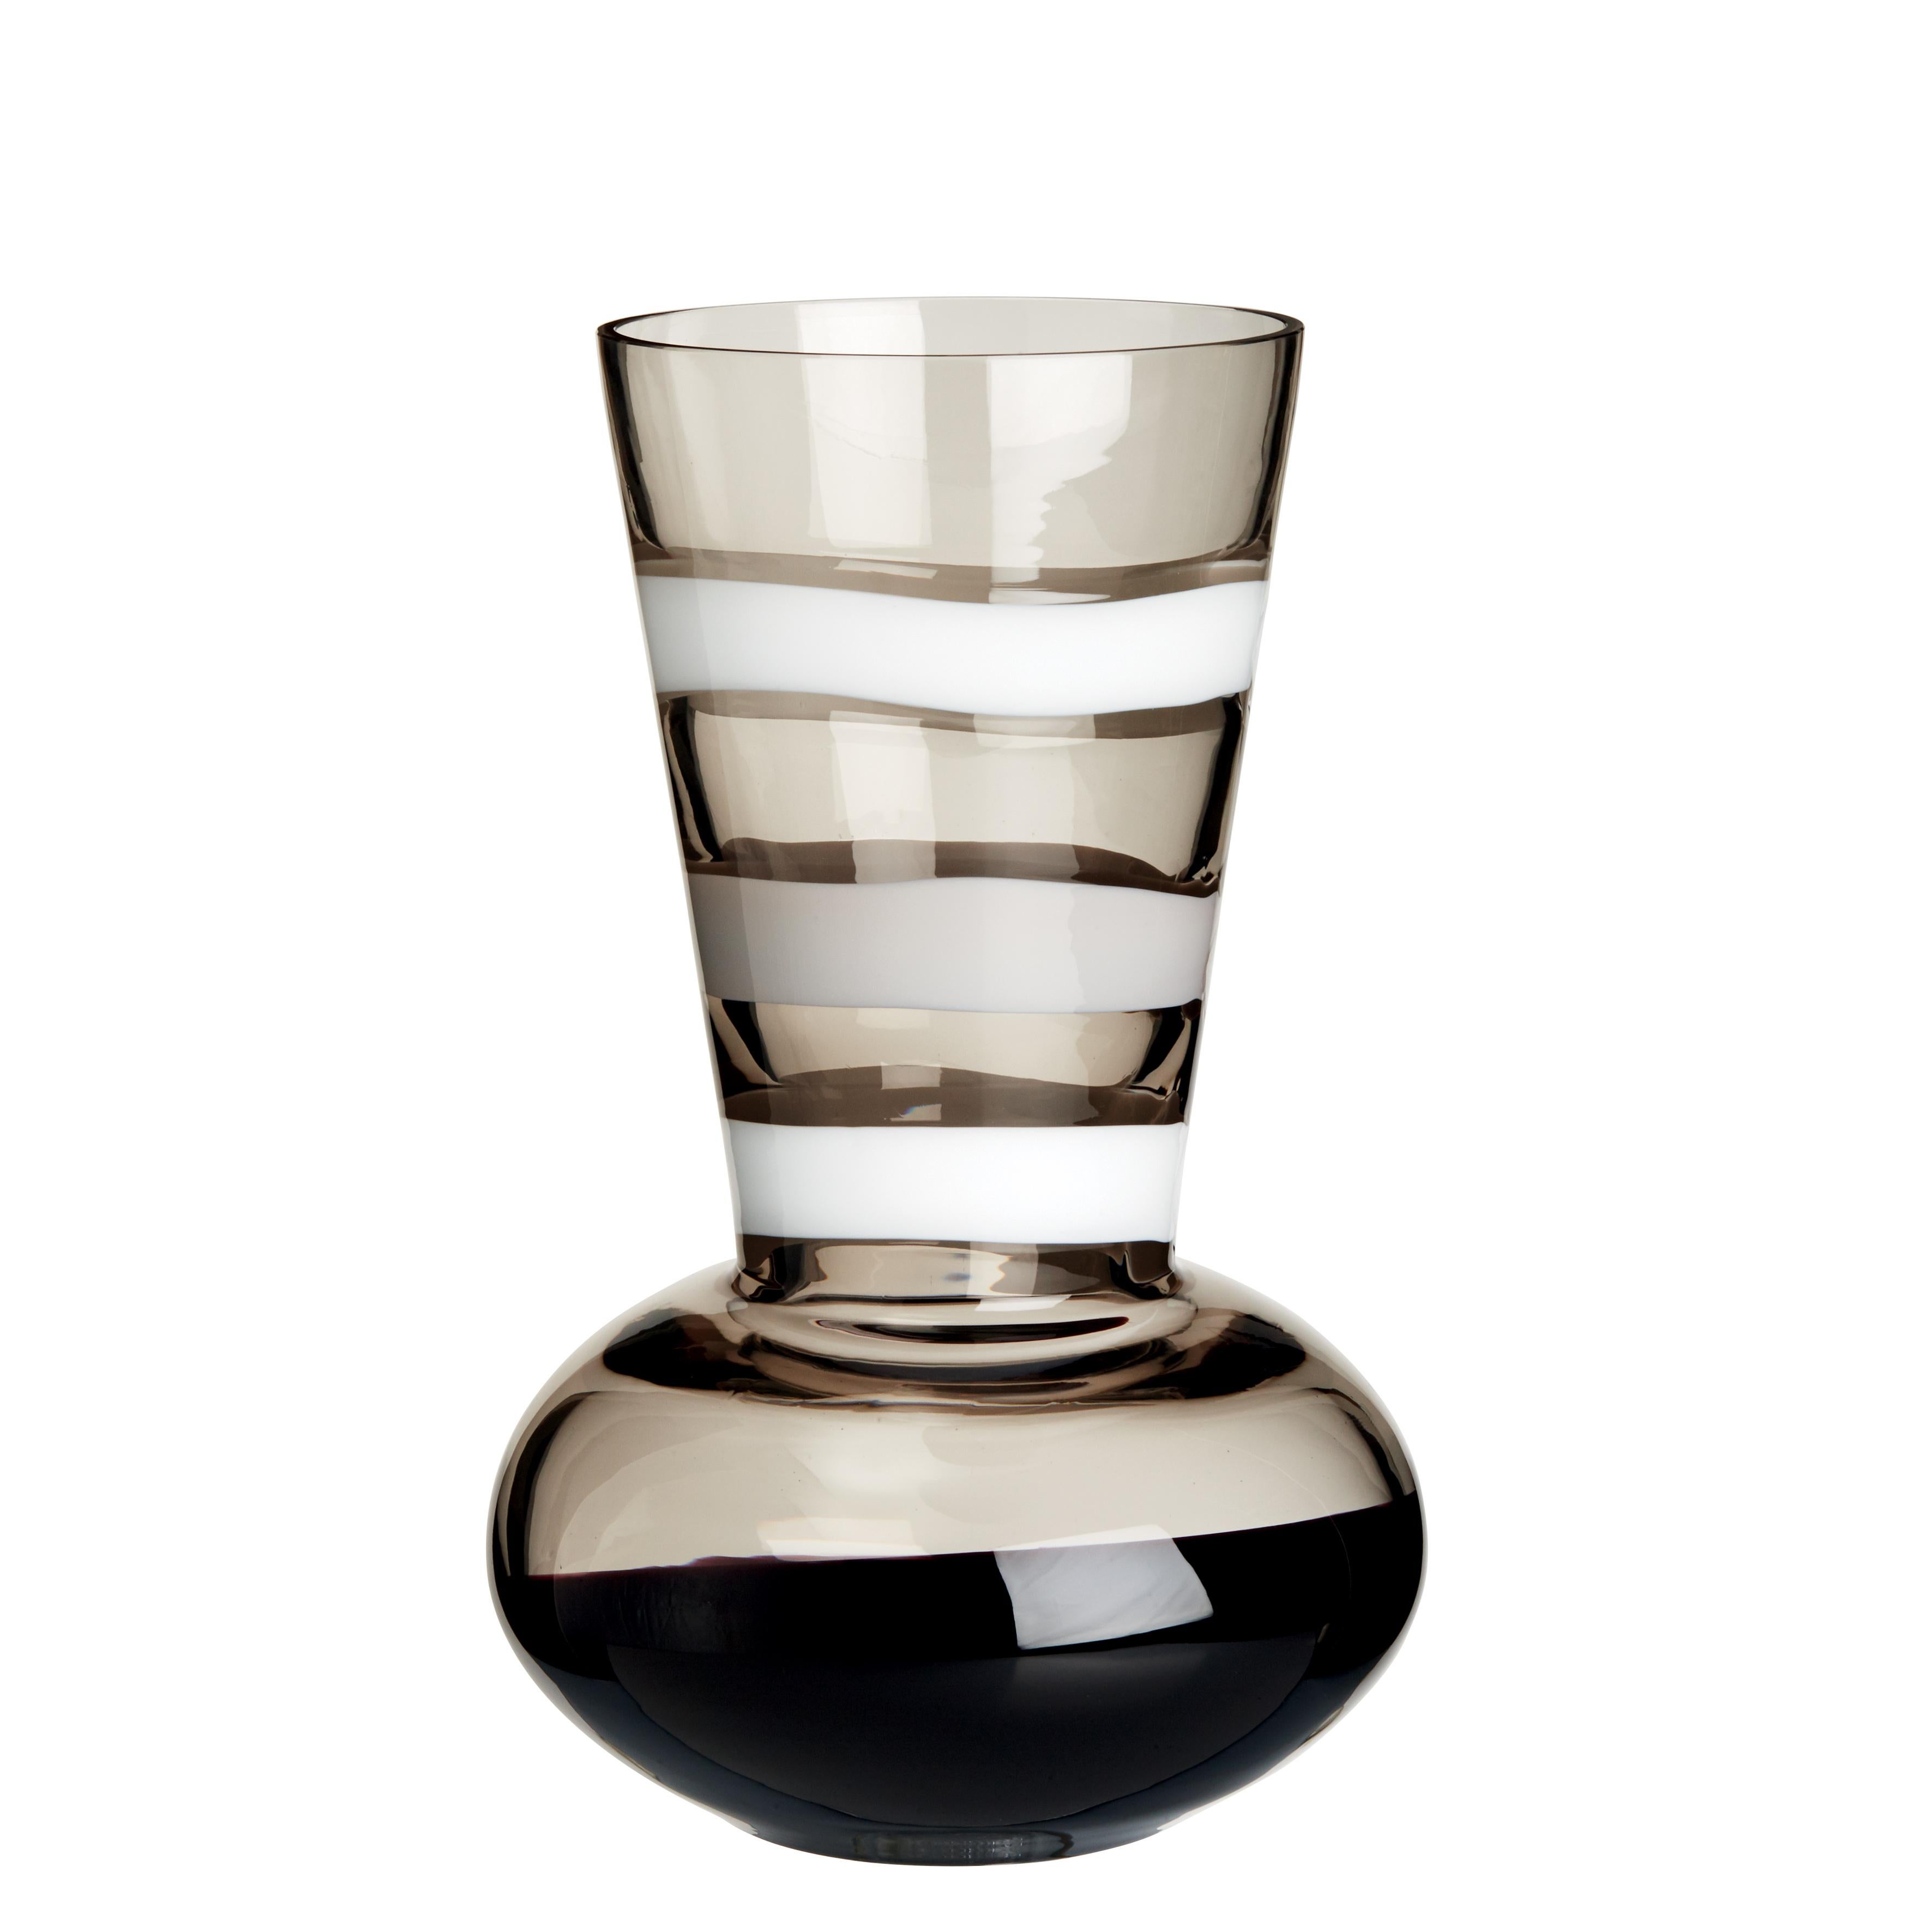 Troncosfera-Vase in Weiß, Grau und Schwarz von Carlo Moretti